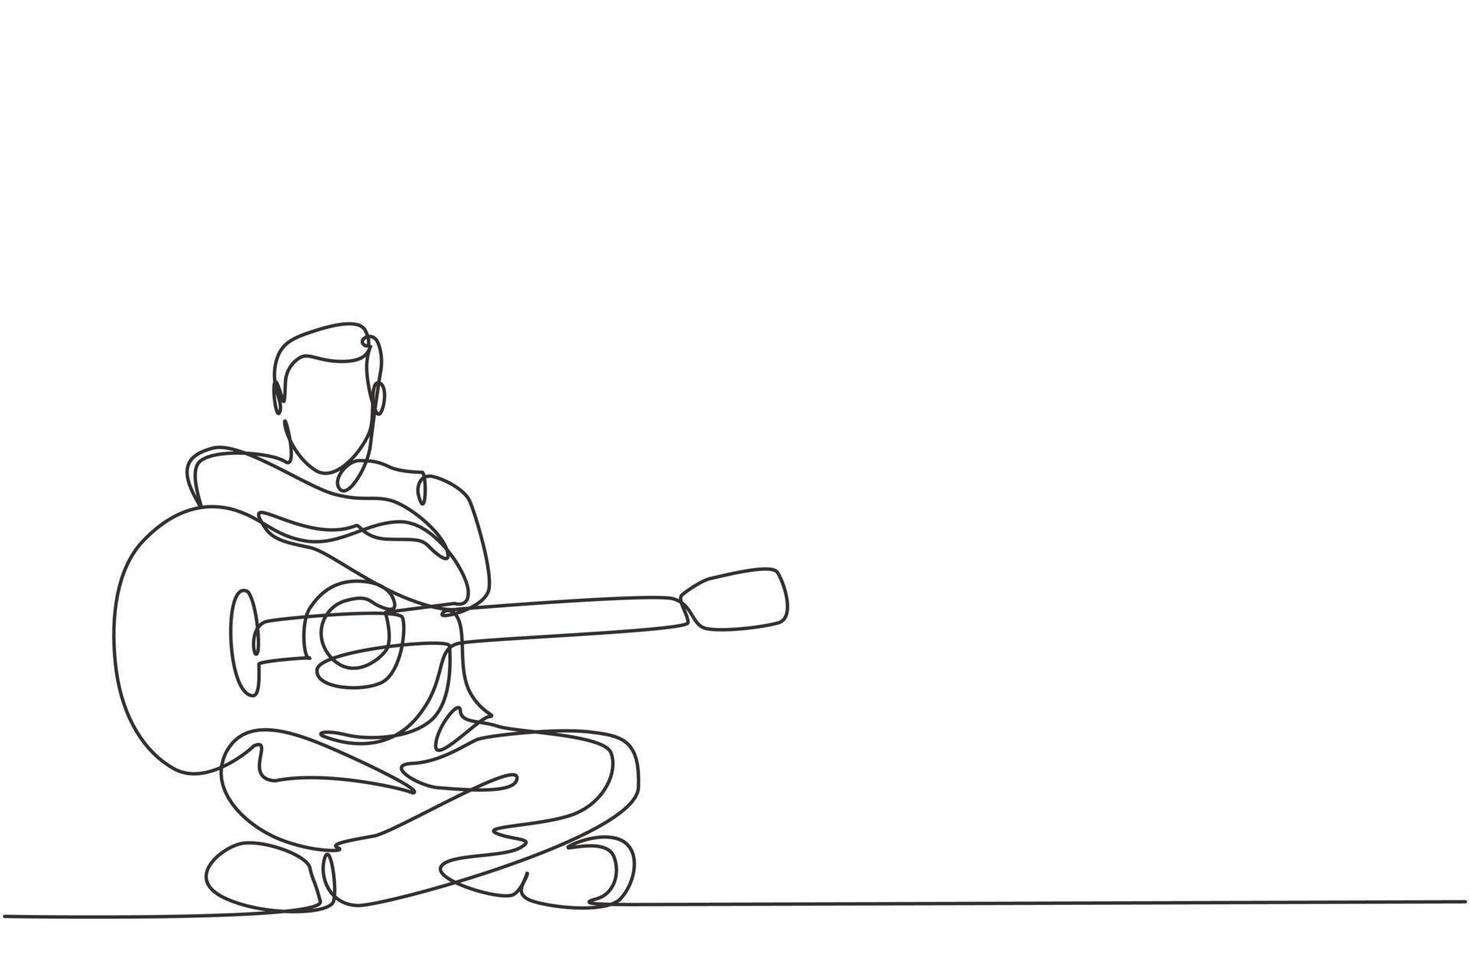 en kontinuerlig linje ritning av ung glad manlig gitarrist poserar efter att ha spelat akustisk gitarr. dynamisk musiker konstnär prestanda koncept enkel rad grafisk rita design vektor illustration